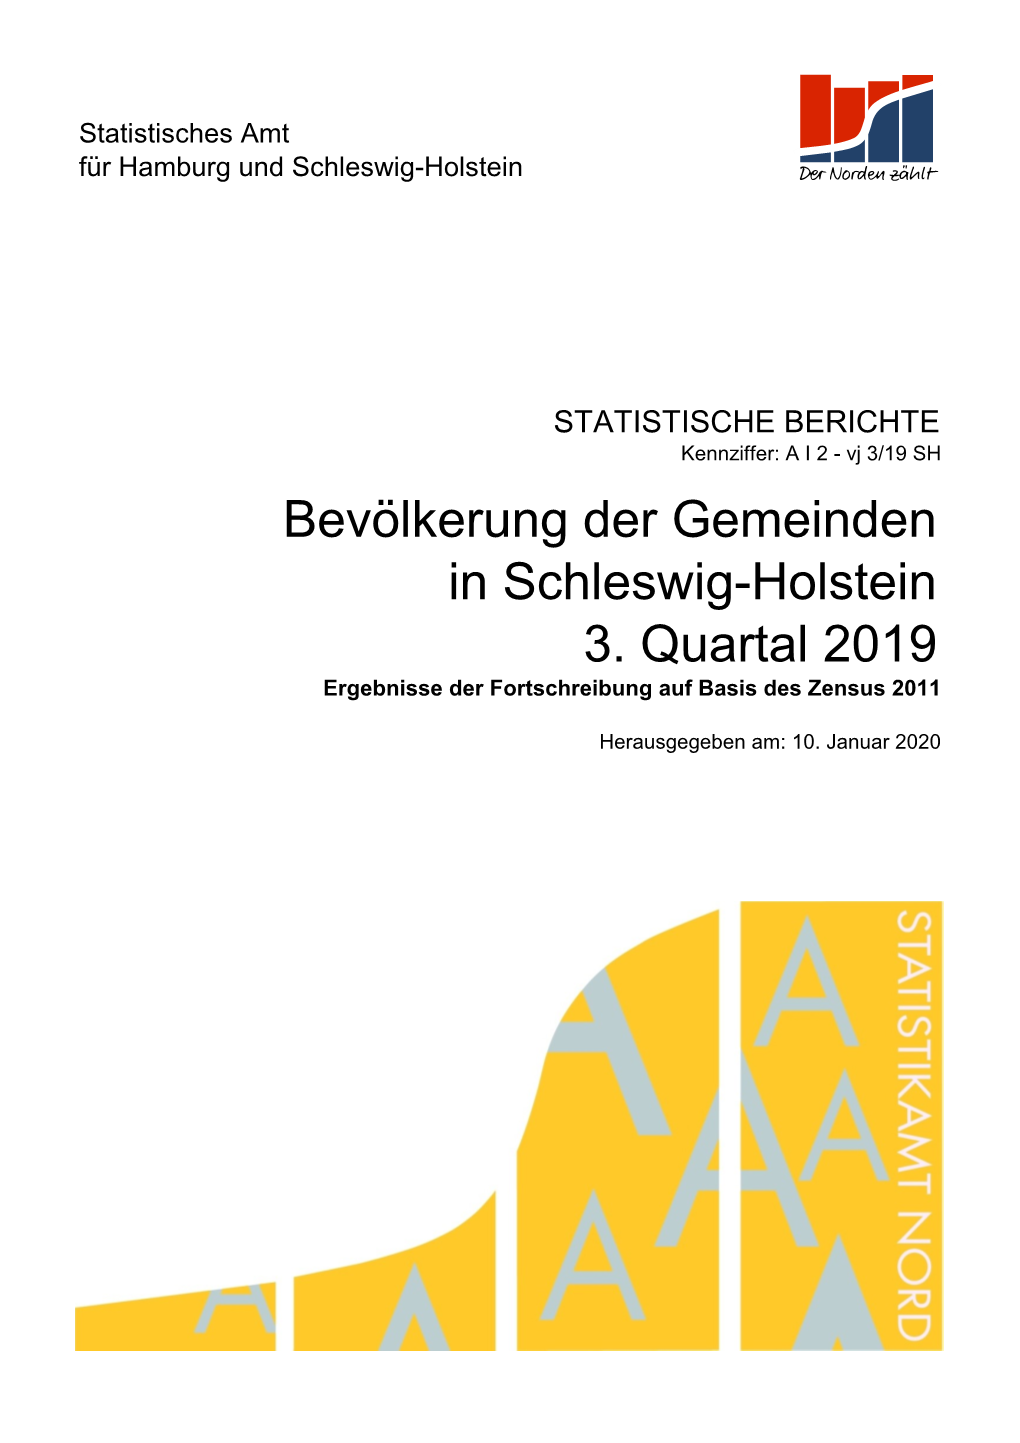 In Schleswig-Holstein 3. Quartal 2019 Bevölkerung Der Gemeinden